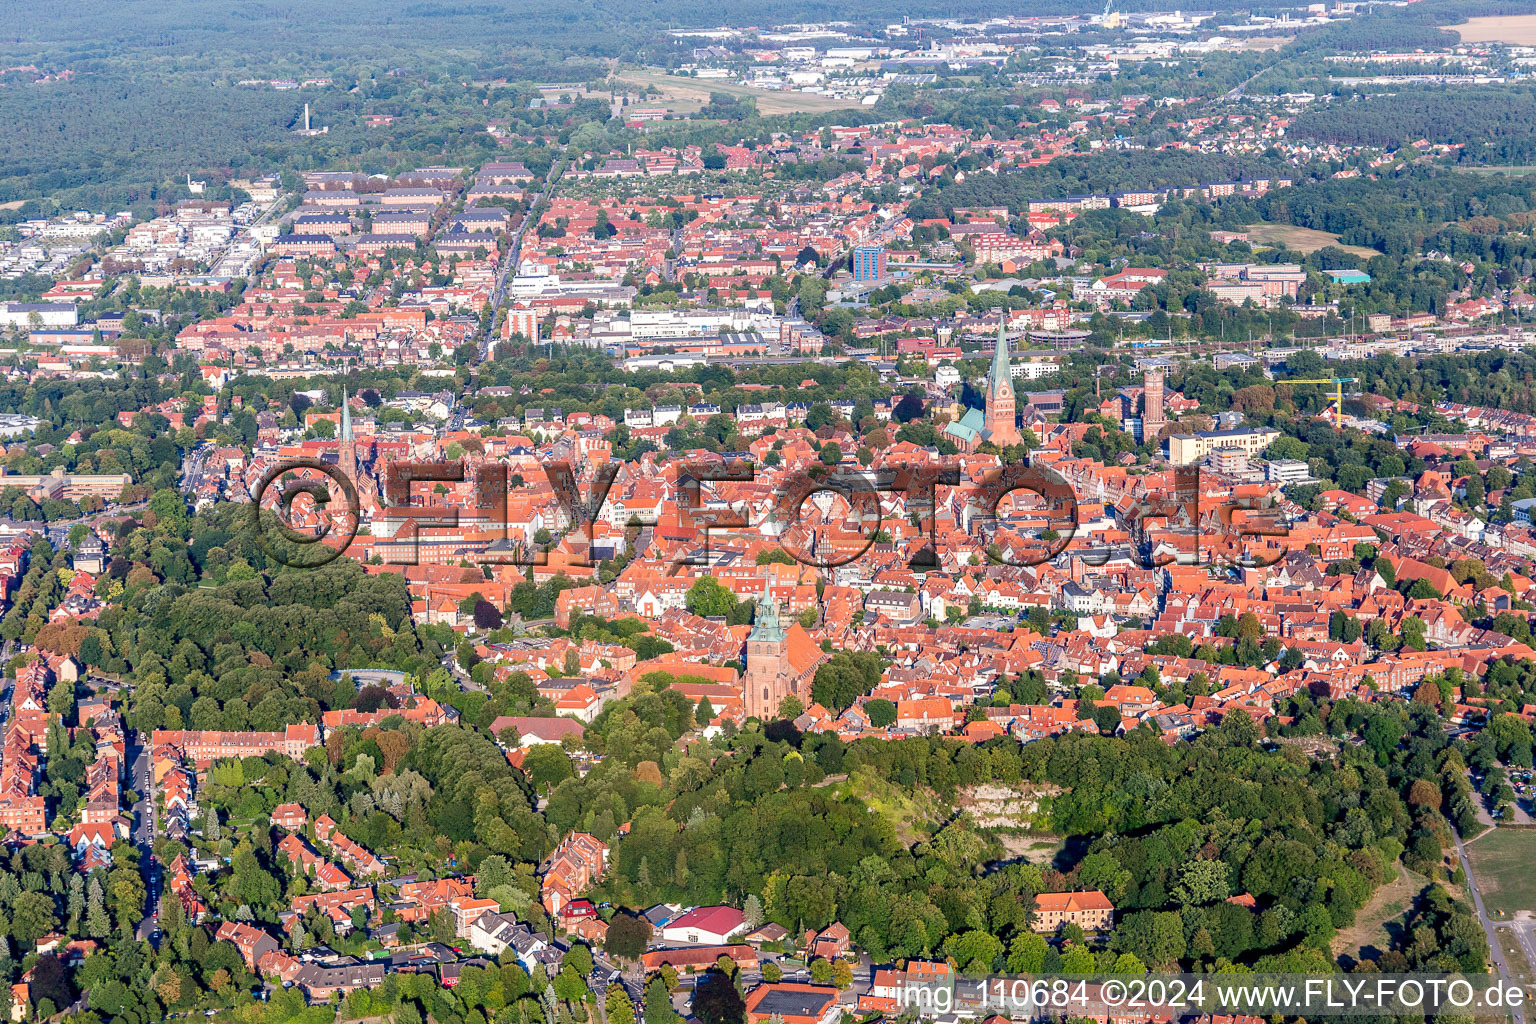 Luftbild von Altstadtbereich und Innenstadtzentrum in Lüneburg im Bundesland Niedersachsen, Deutschland